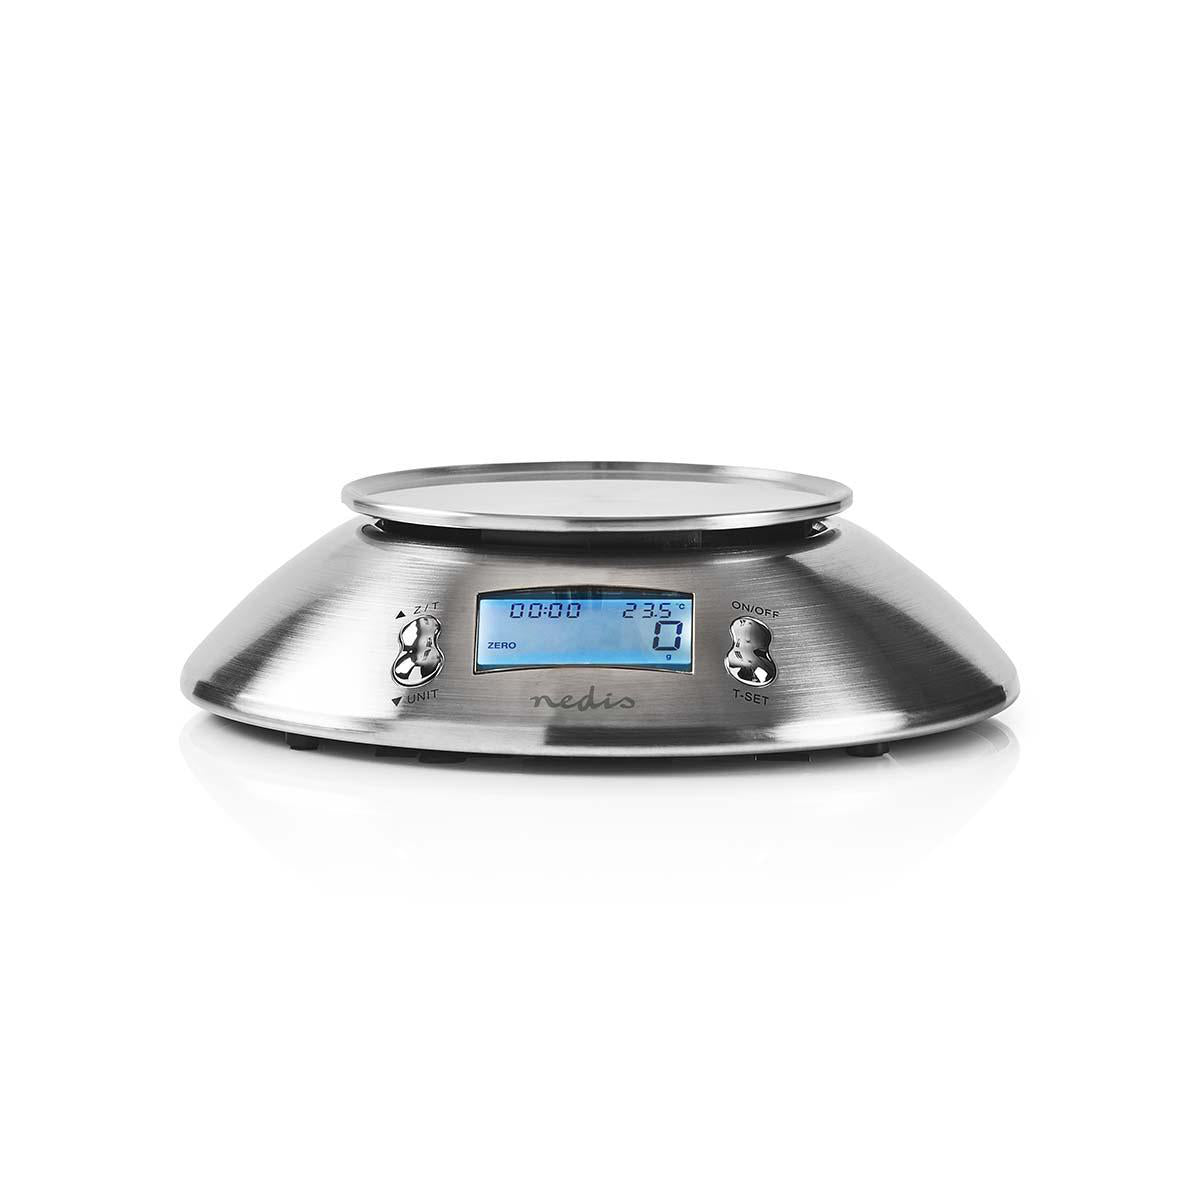 Küchenwaagen | Digital | Edelstahl | Timerfunktion | Thermometer Funktion | Abnehmbare Schale | Silber